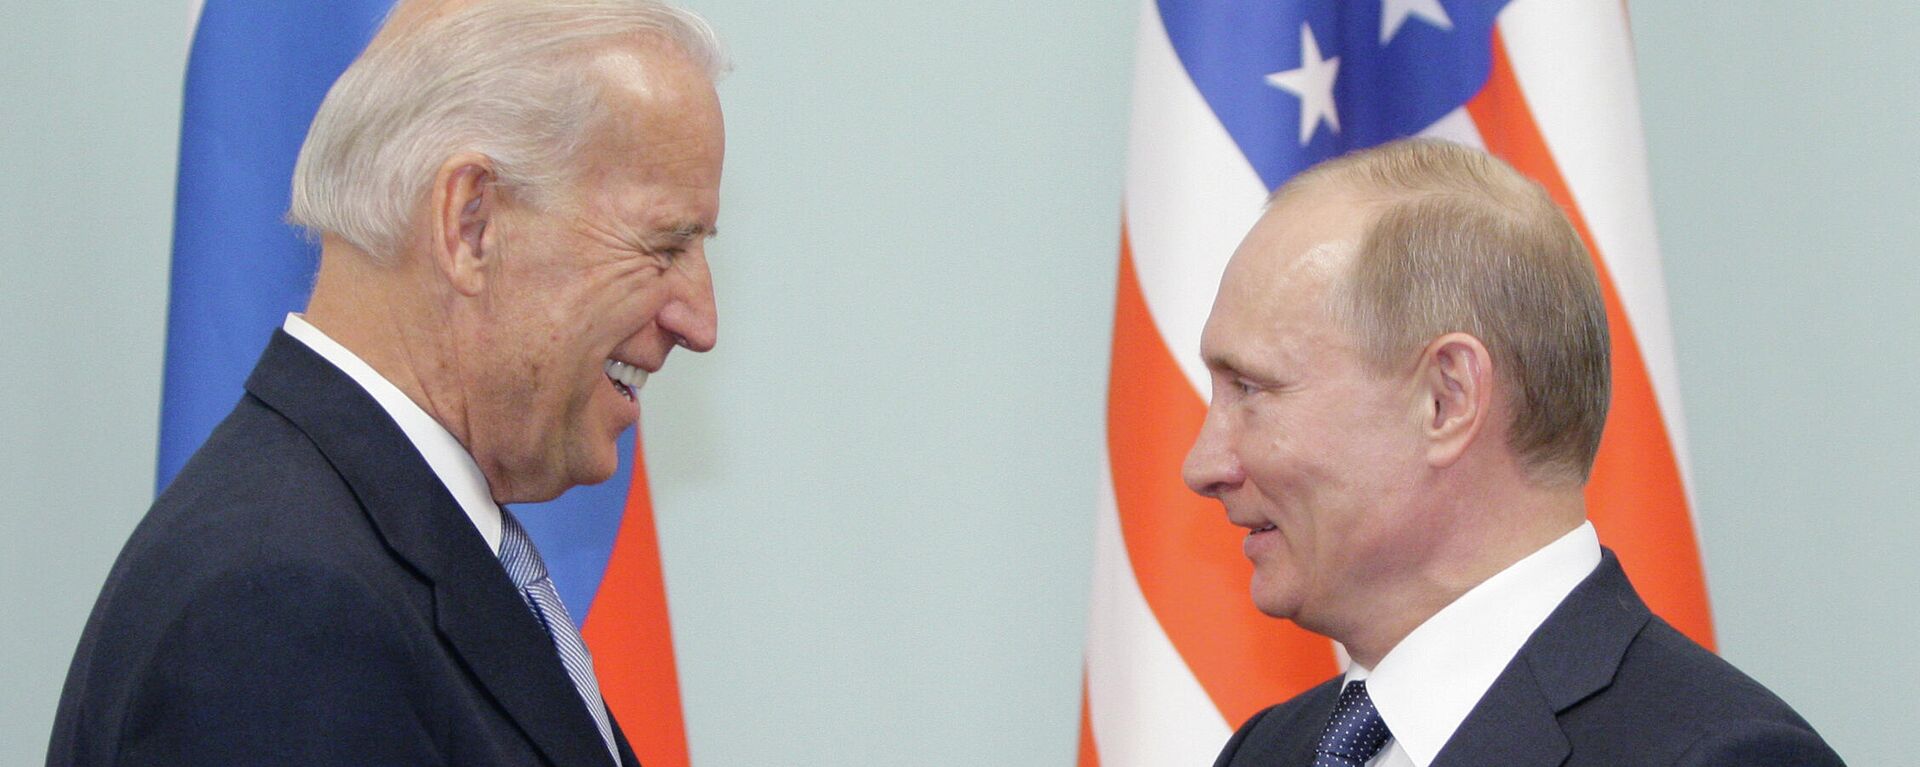 Joe Biden, entonces vicepresidente de EEUU, y Vladímir Putin, entonces primer ministro de Rusia, durante un encuentro el 2011 - Sputnik Mundo, 1920, 18.04.2021